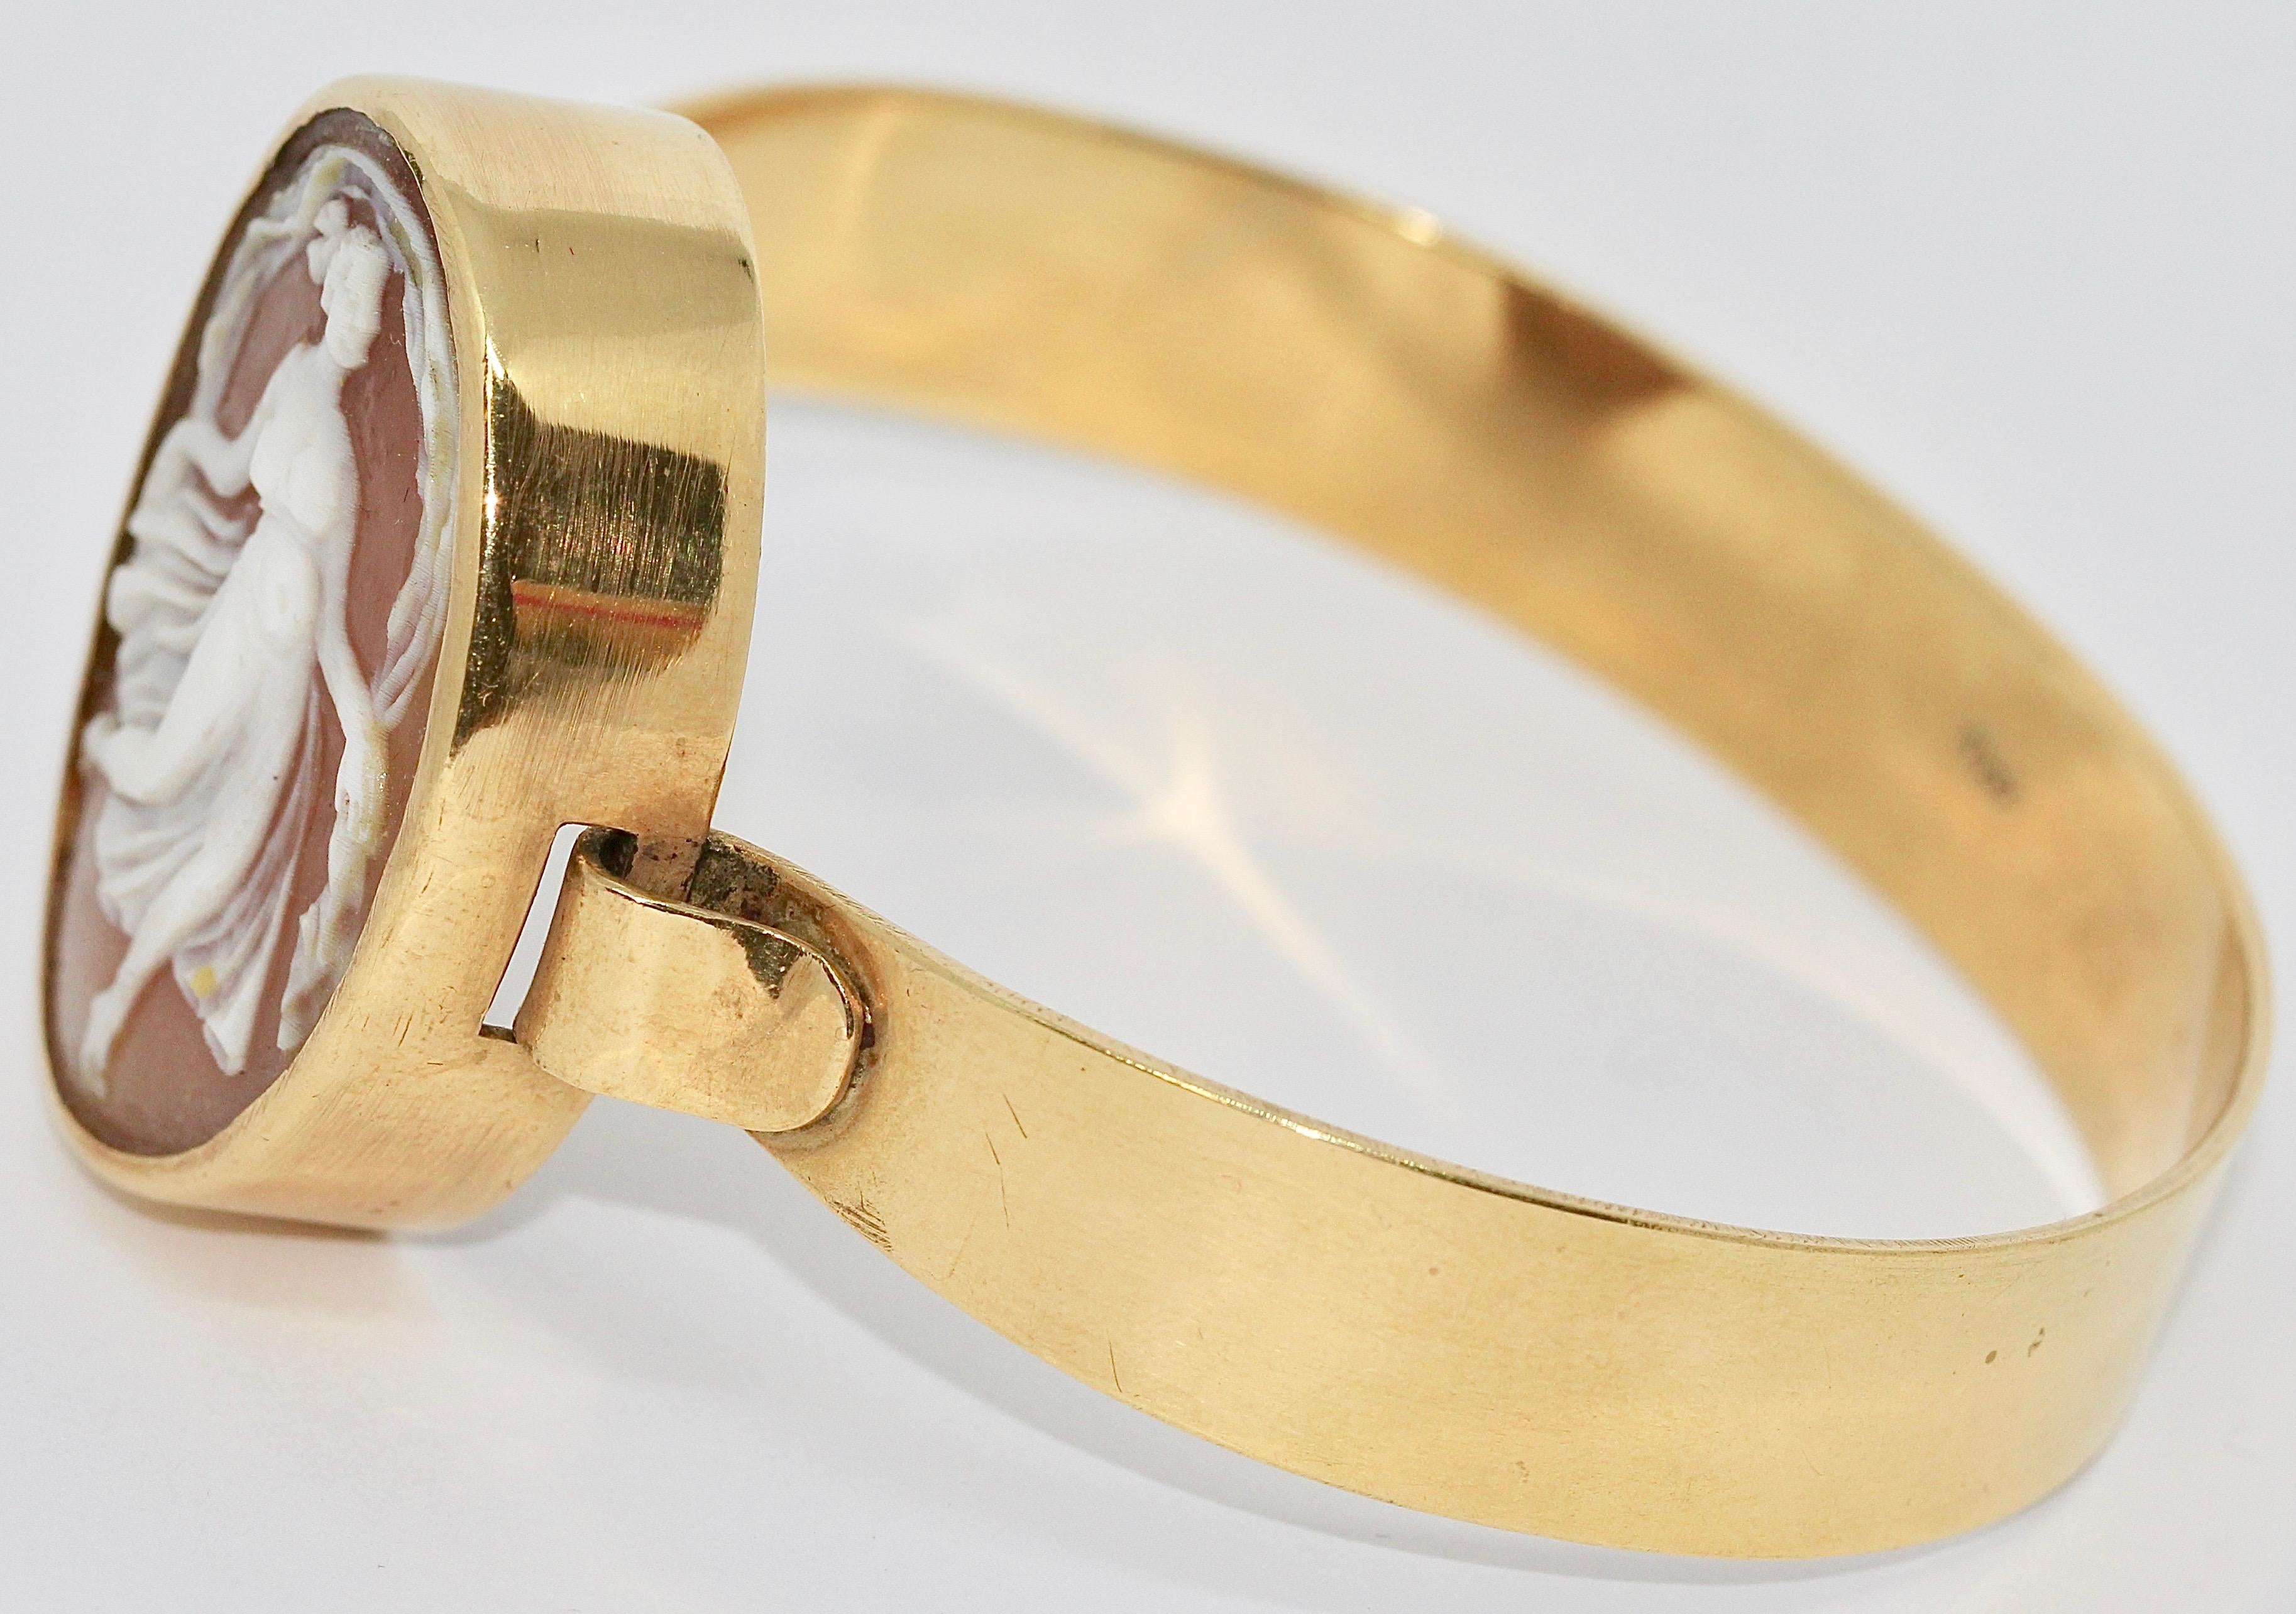 Magnifique bangle en or 18 carats avec camée.

Dimensions de la pièce de tête ovale : 37mm x 28.5mm

Largeur du bracelet 11-12 mm